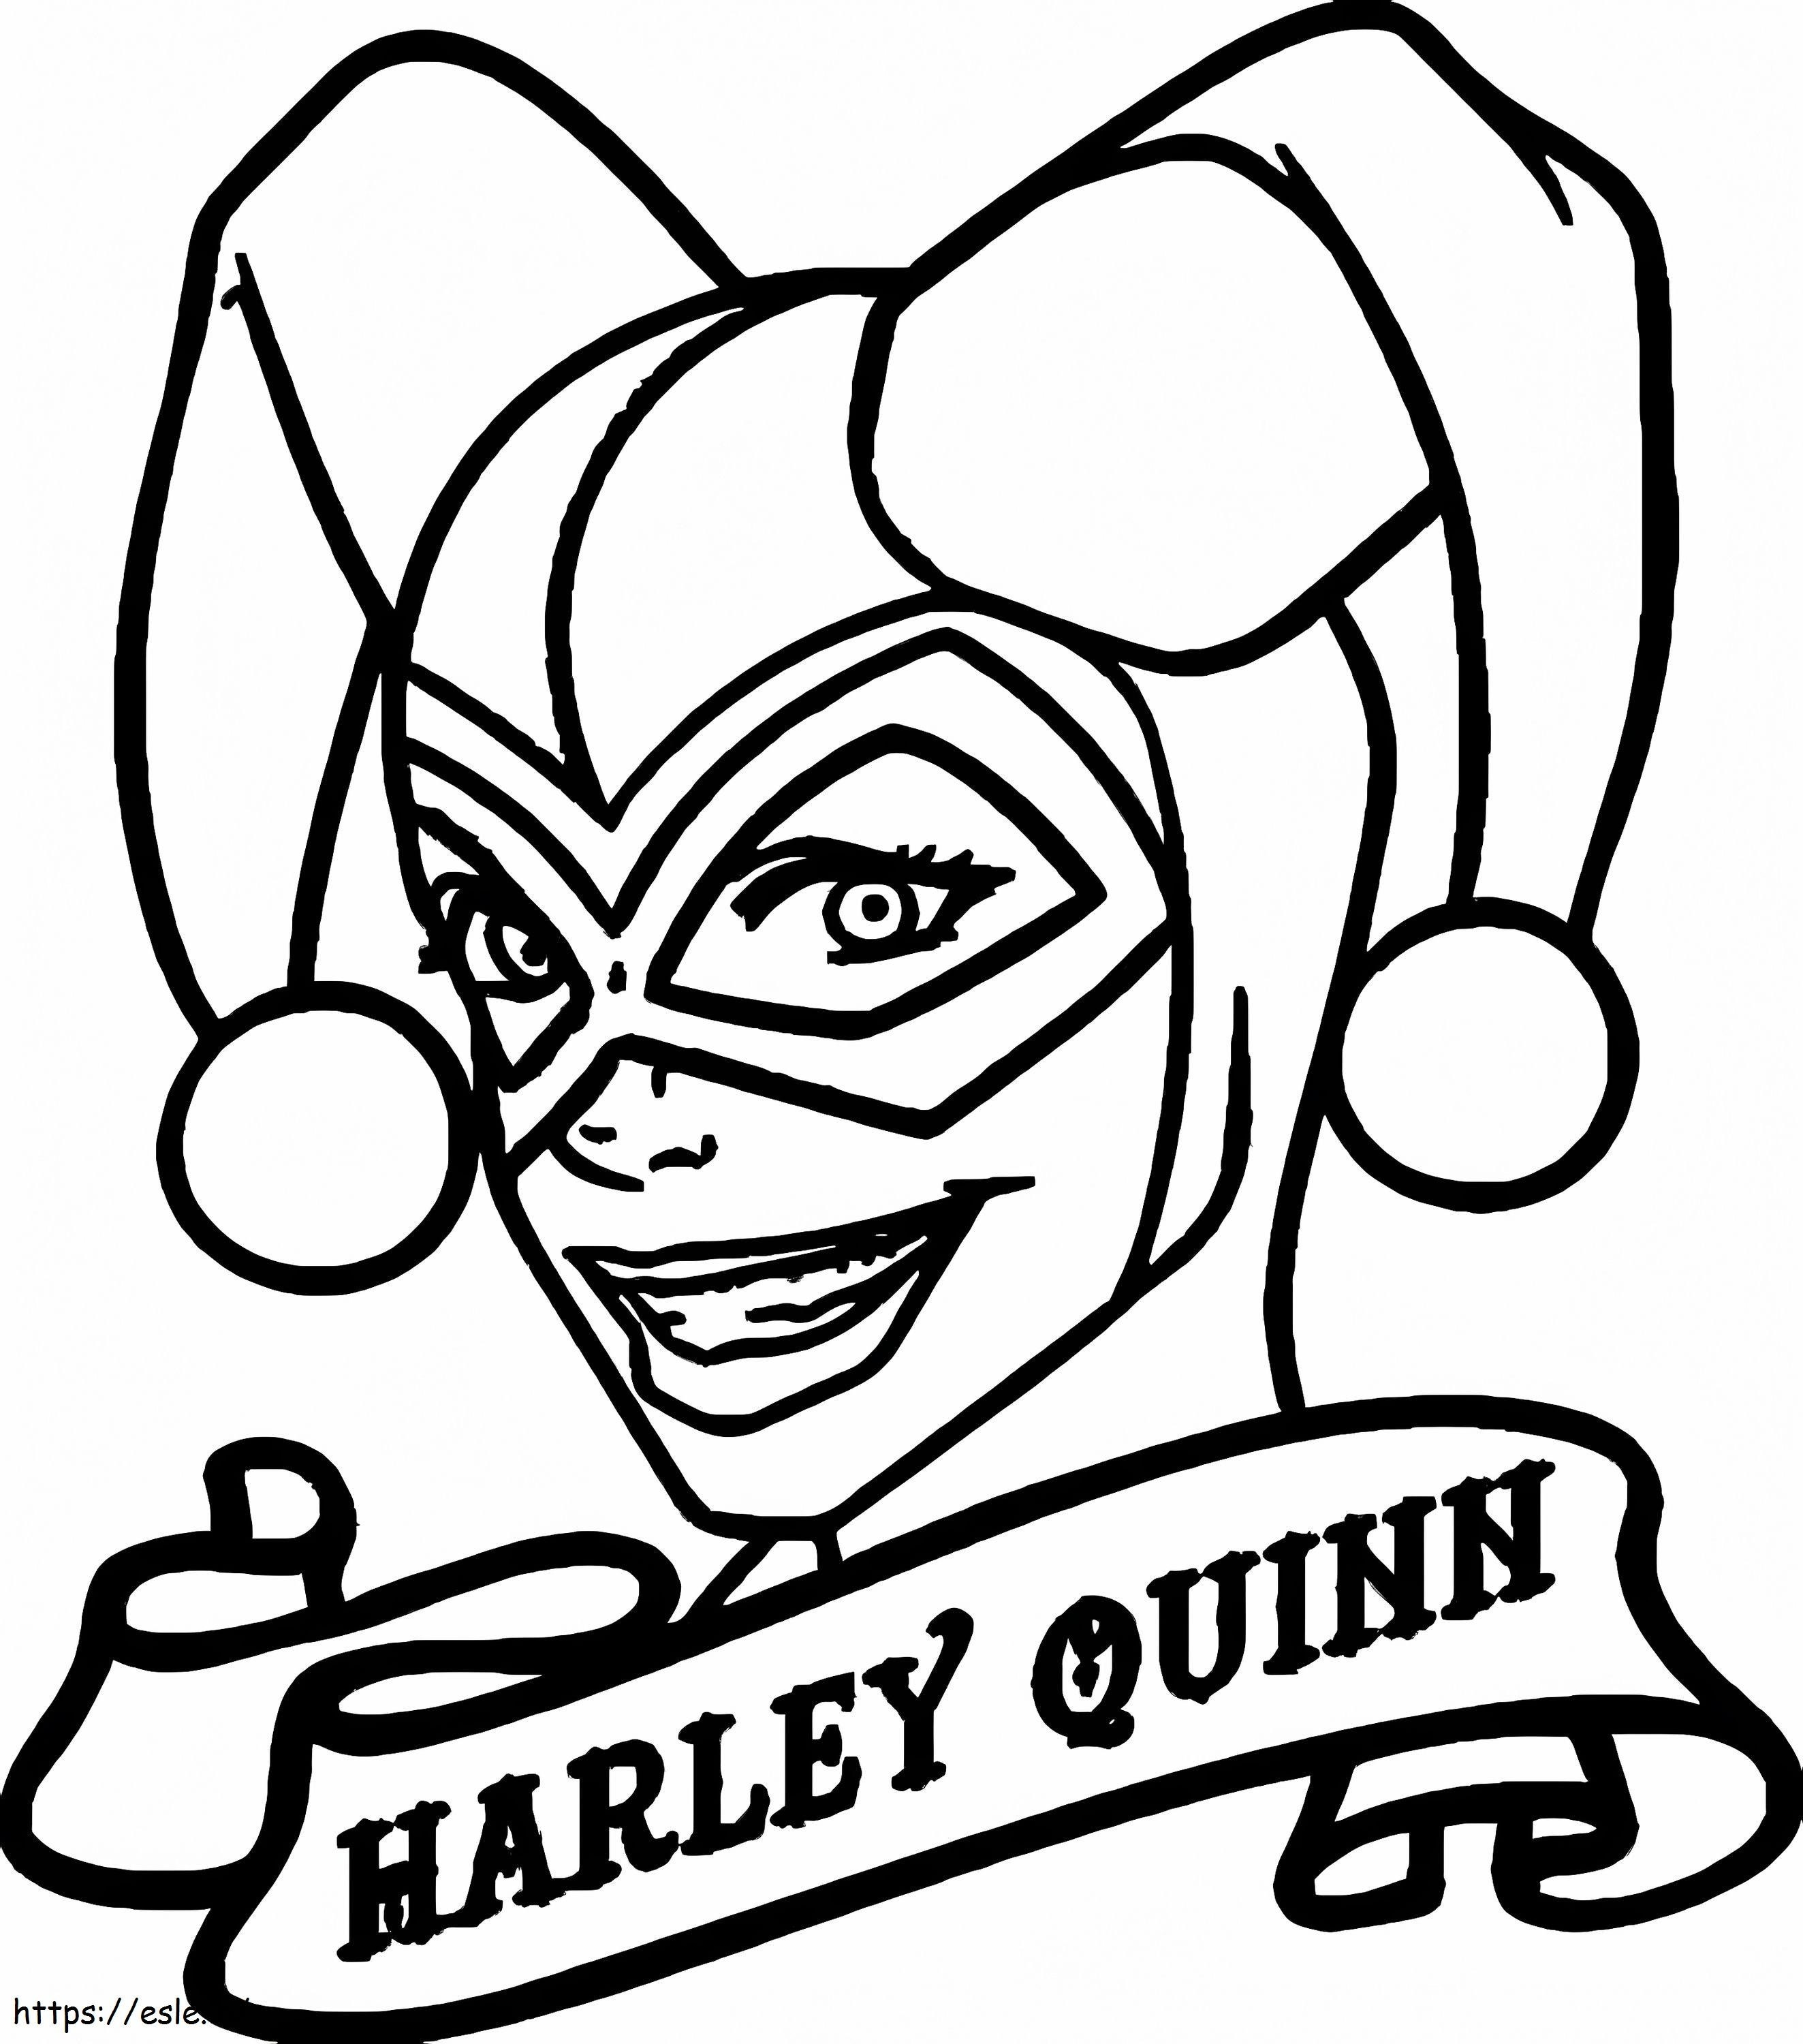 Narysuj głowę Harley Quinn kolorowanka